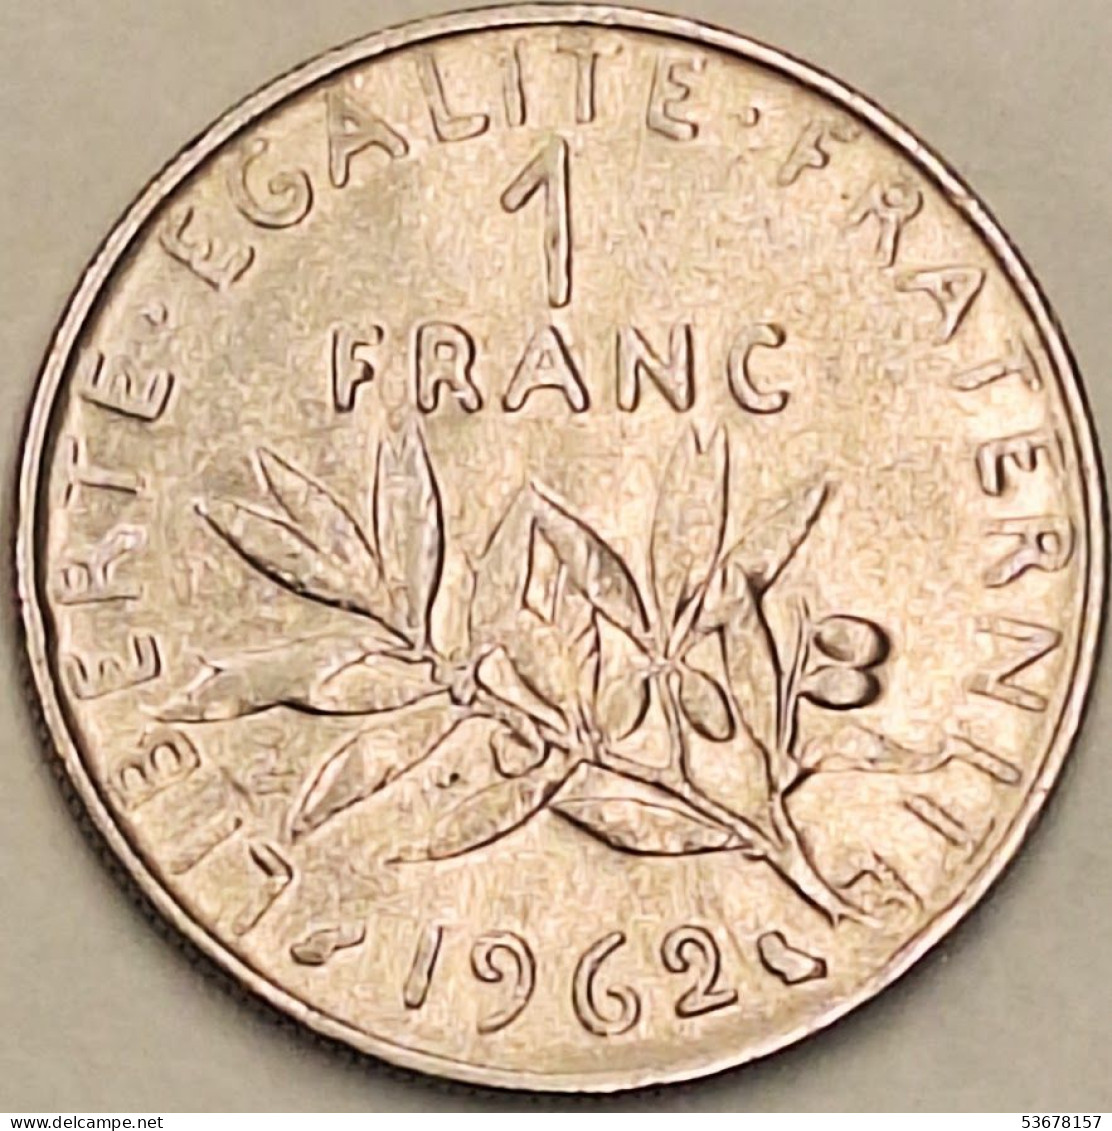 France - Franc 1962, KM# 925.1 (#4307) - 1 Franc